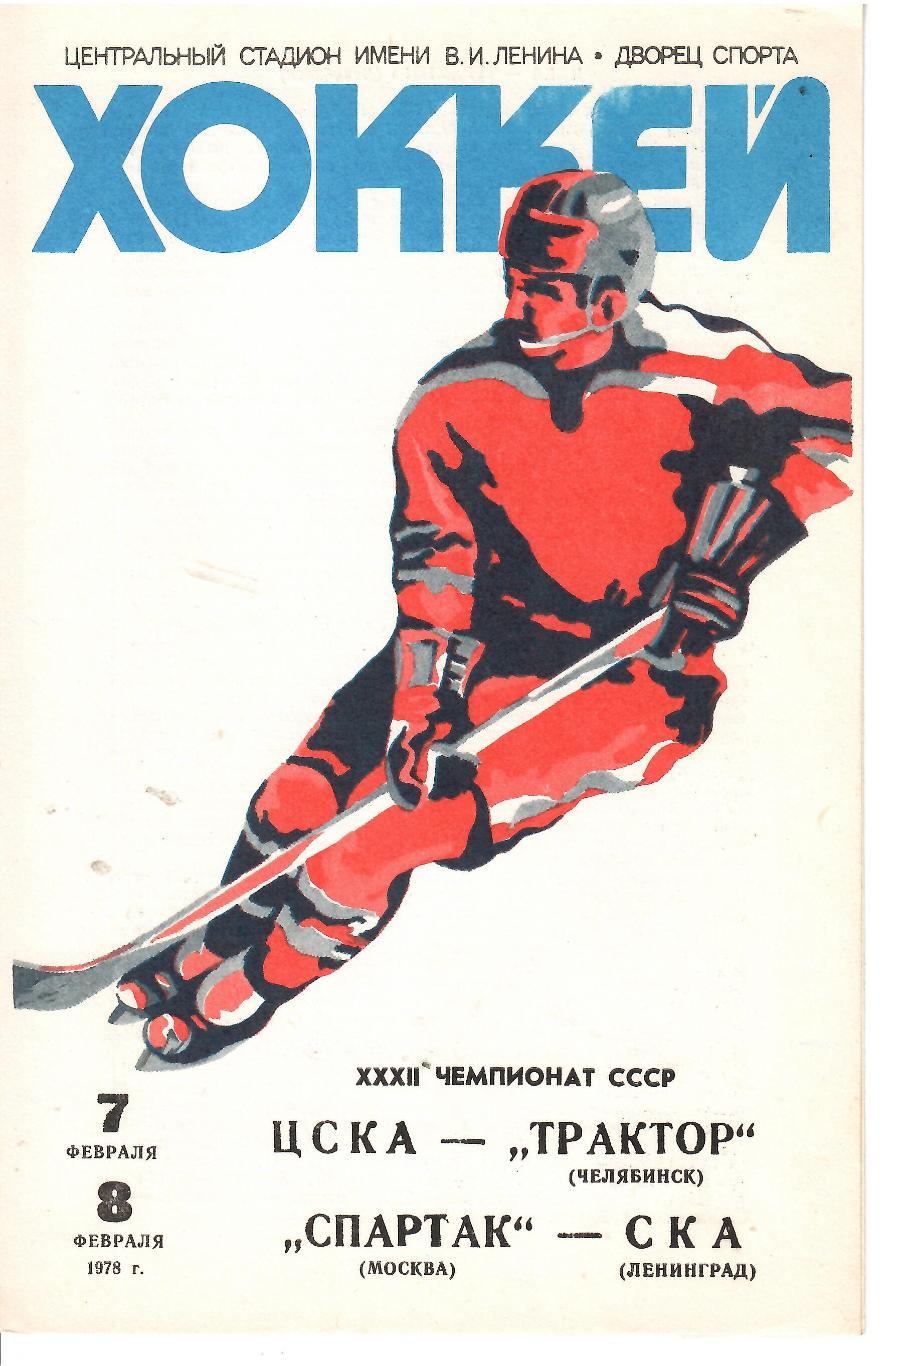 1978 Хоккей ЦСКА - Трактор - Спартак Москва - СКА Ленинград